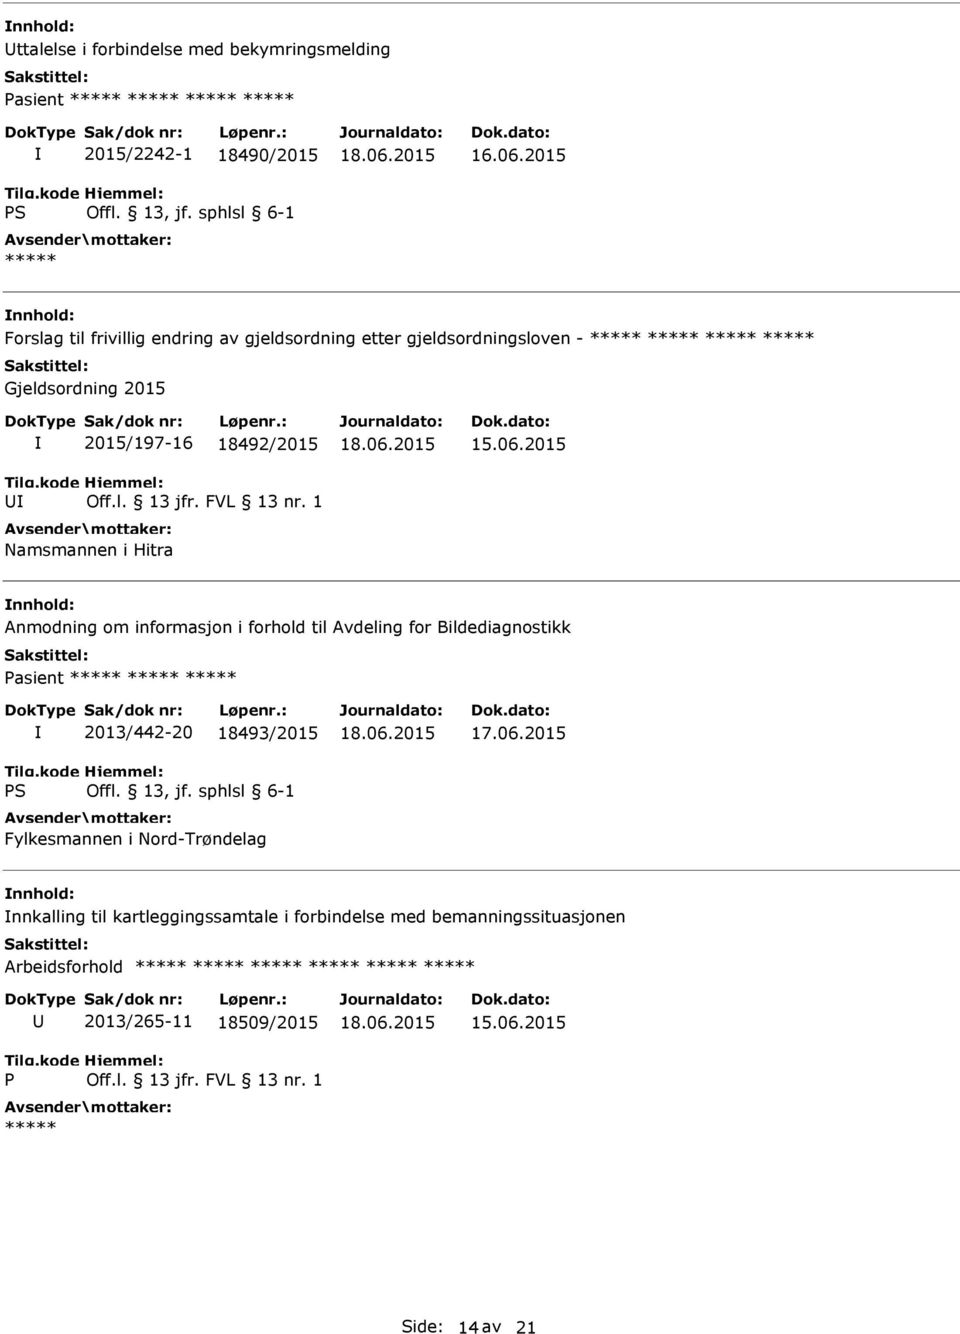 informasjon i forhold til Avdeling for Bildediagnostikk asient S 2013/442-20 18493/2015 Fylkesmannen i Nord-Trøndelag